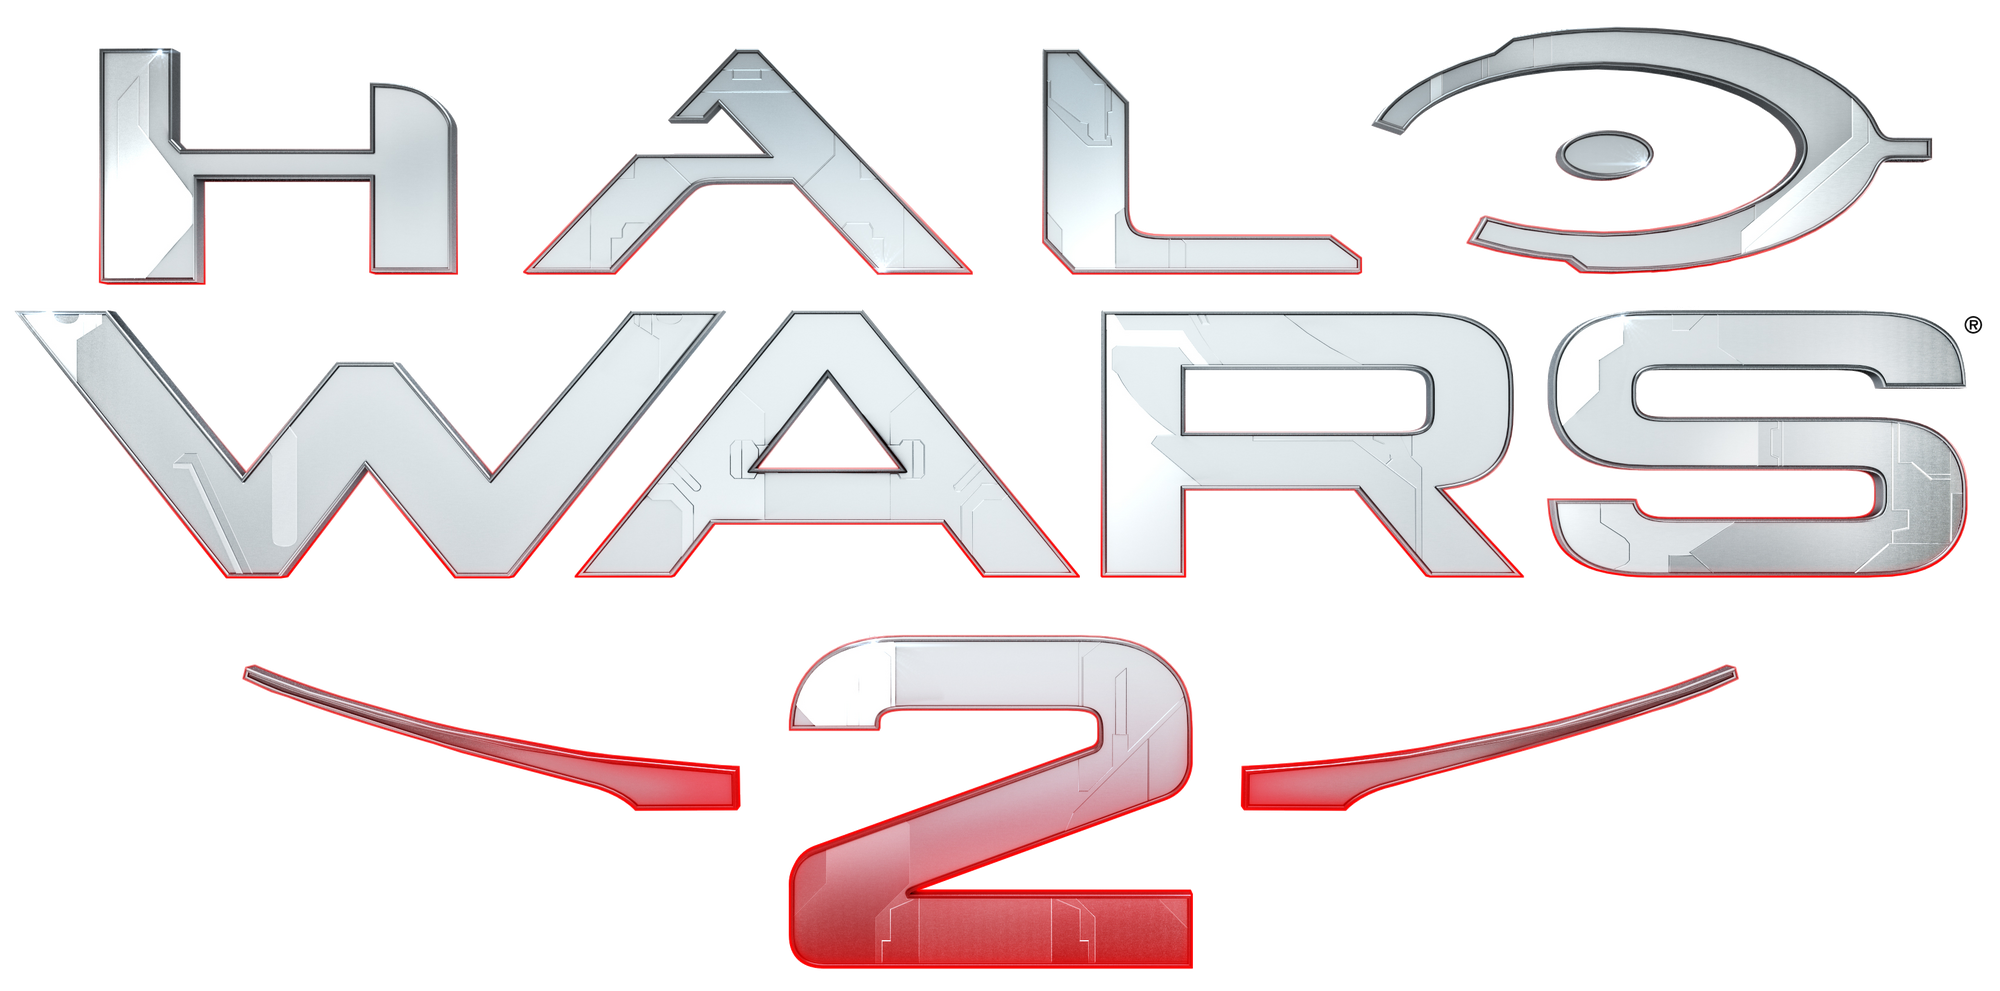 Halo 2 Logo PNG File